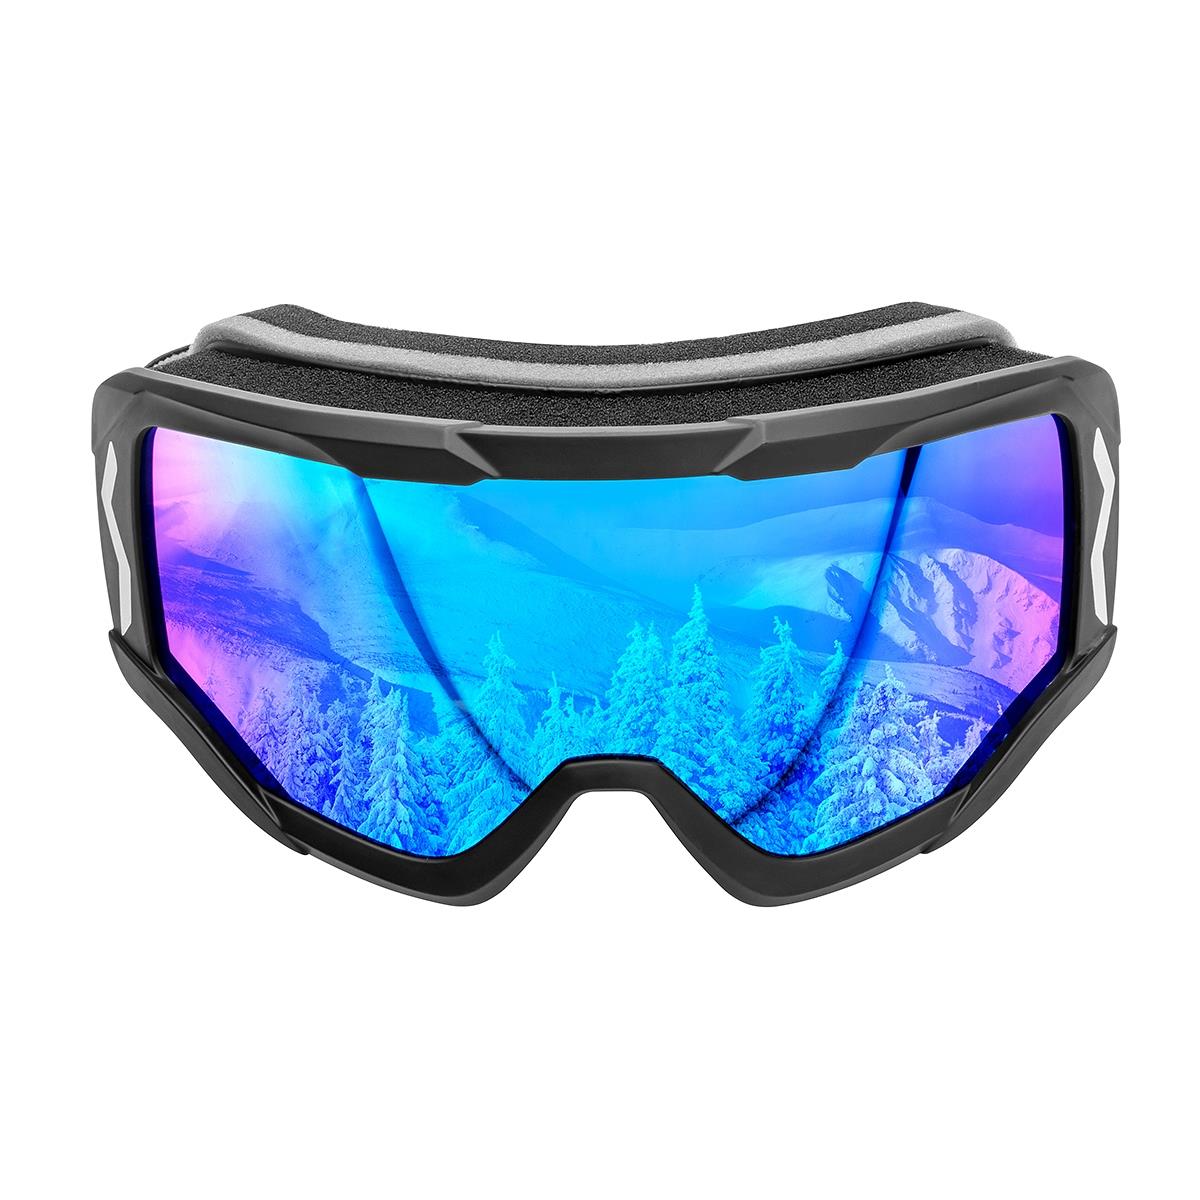 Очки горнолыжные HS-HX-014 Helios очки для плавания взрослые uv защита